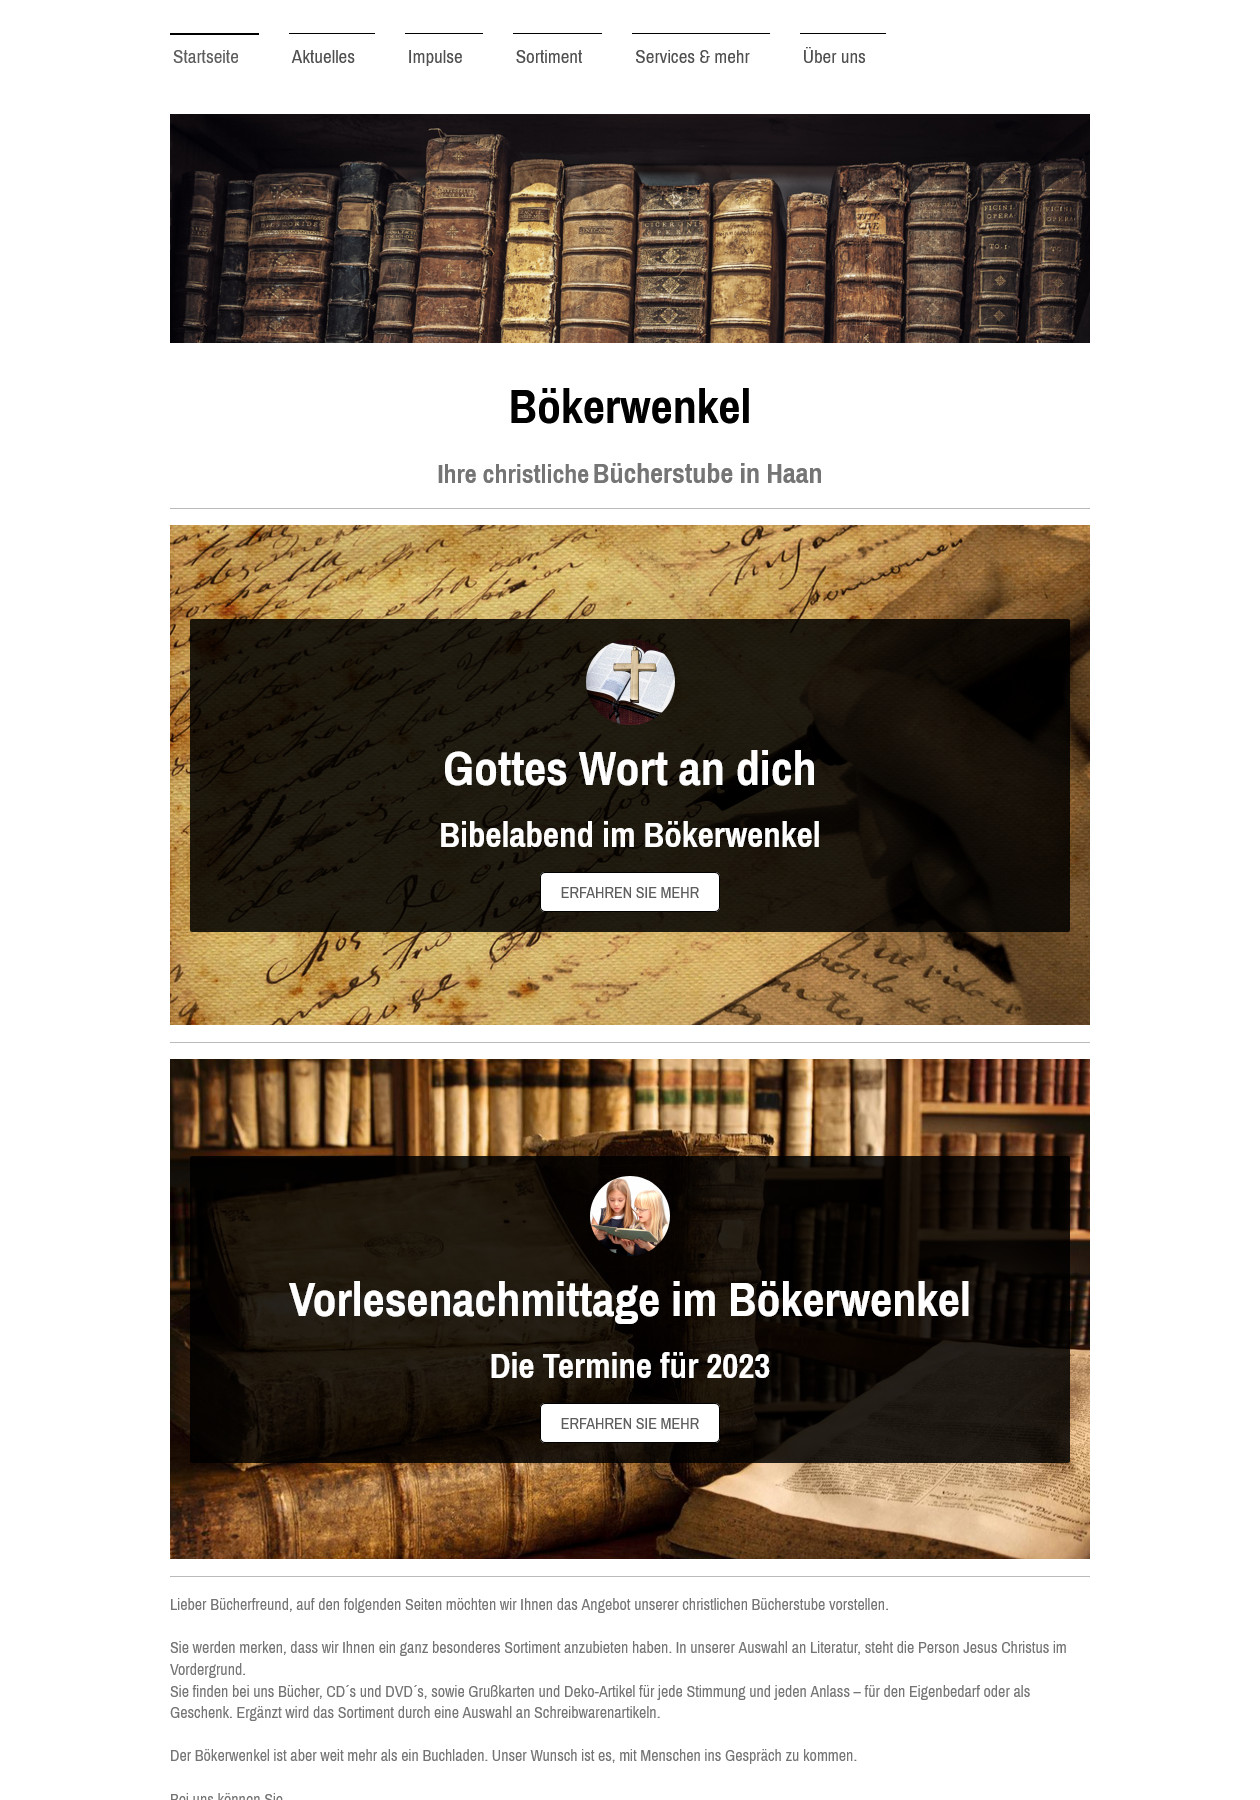 Bökerwenkel - Ihre christliche Bücherstube in Haan